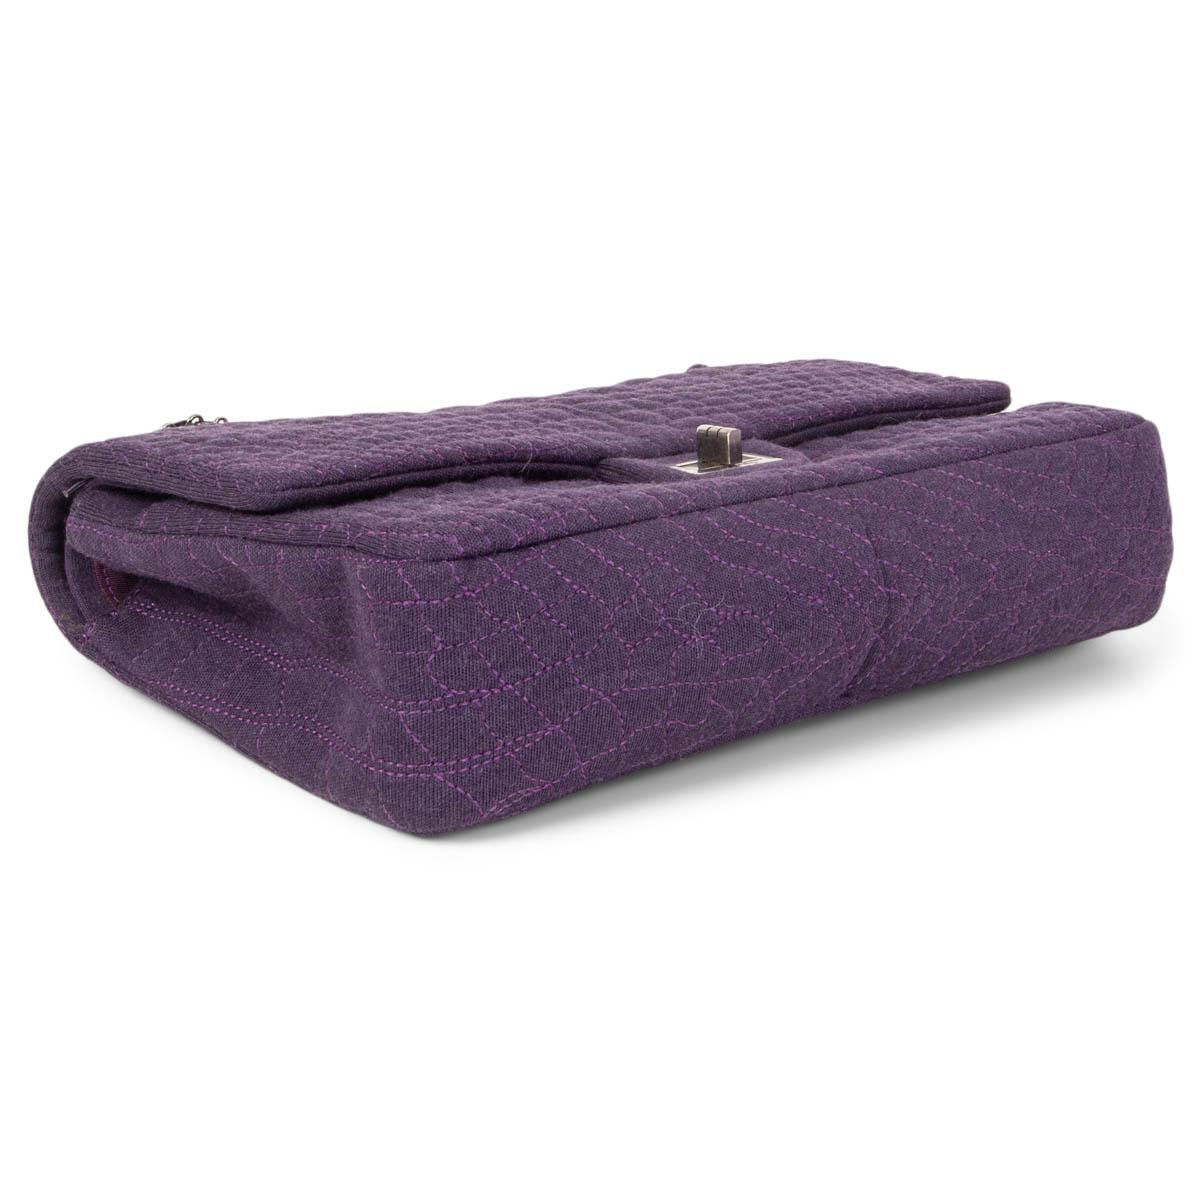 Black CHANEL purple JERSEY COCO'S CROC 2.55 REISSUE 226 DOUBLE FLAP Shoulder Bag